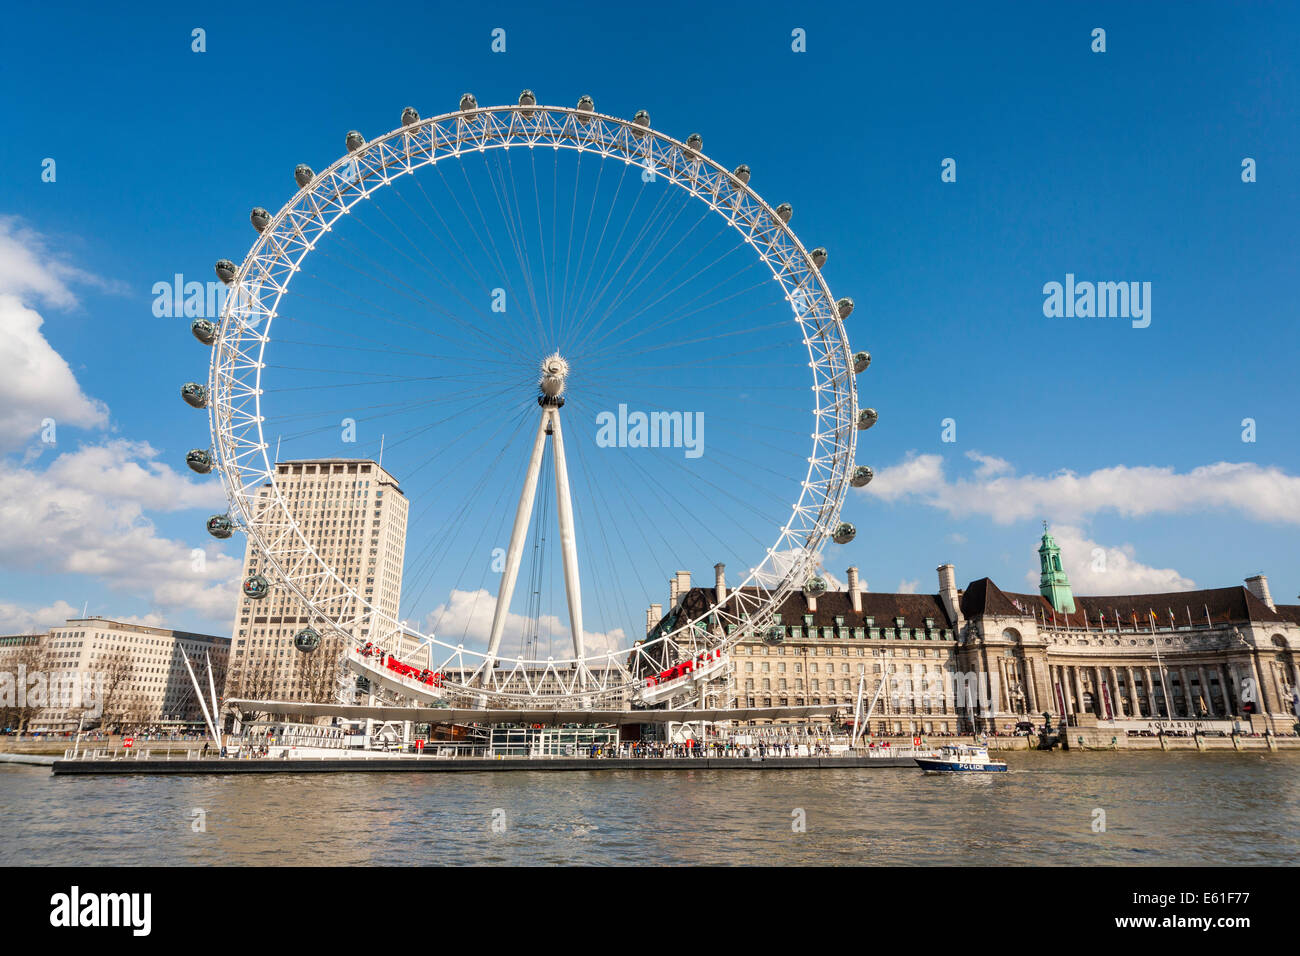 Le London Eye ou Millenium Wheel sur la rive sud de la Tamise à Londres Angleterre Royaume-uni vue de la rivière. JMH6344 Banque D'Images